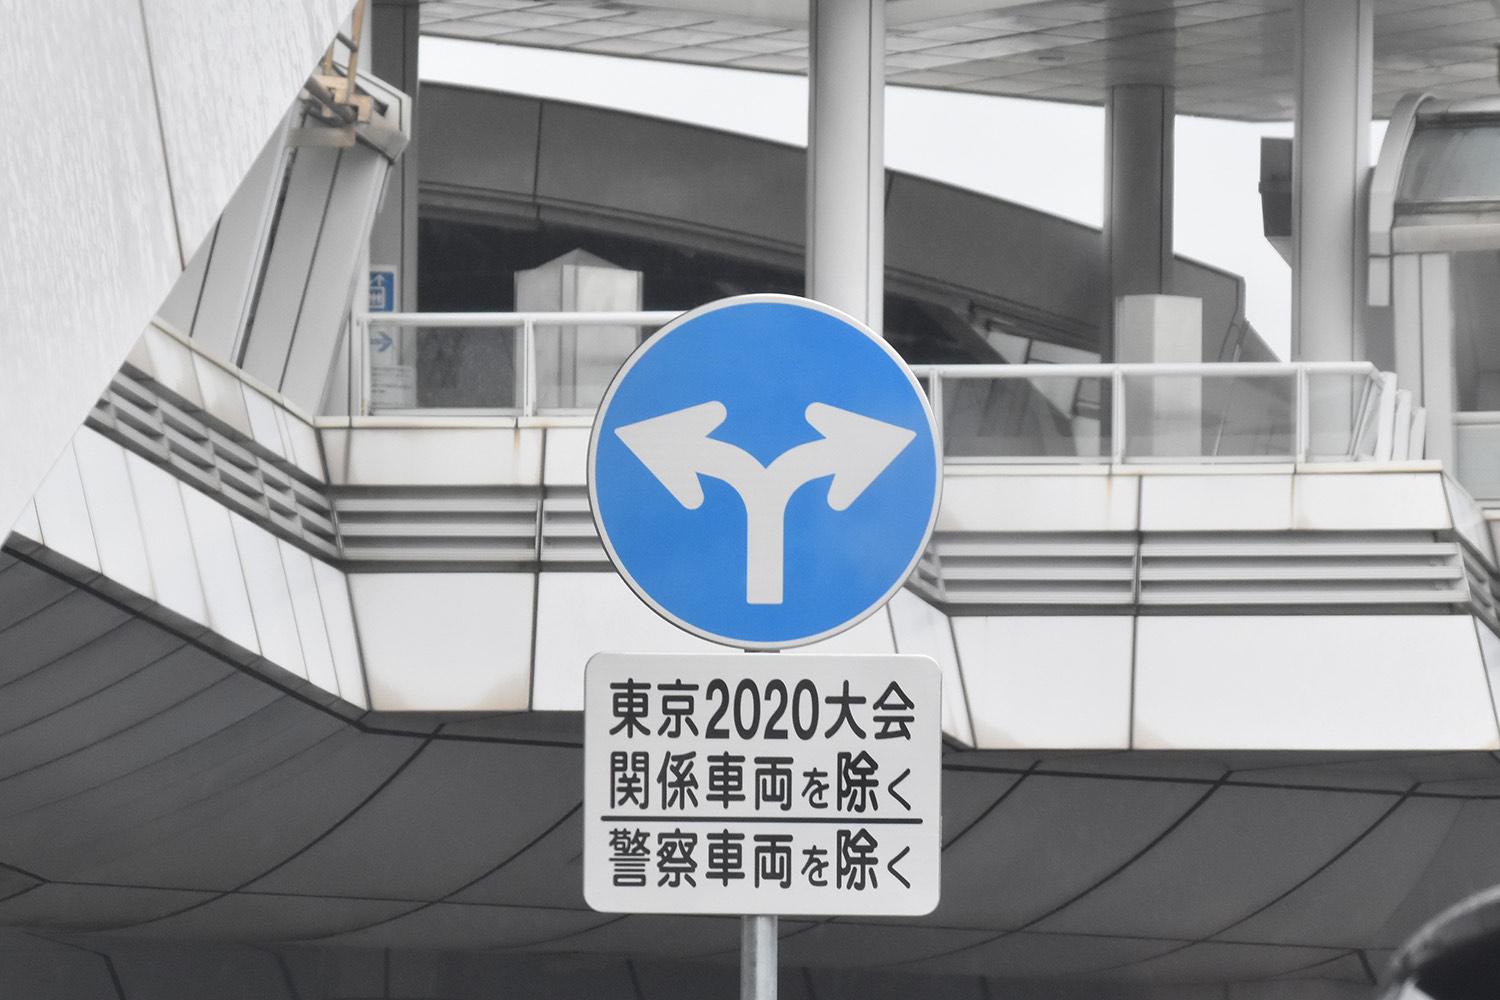 東京オリンピック2020の関係者専用・優先レーンとは 〜 画像2